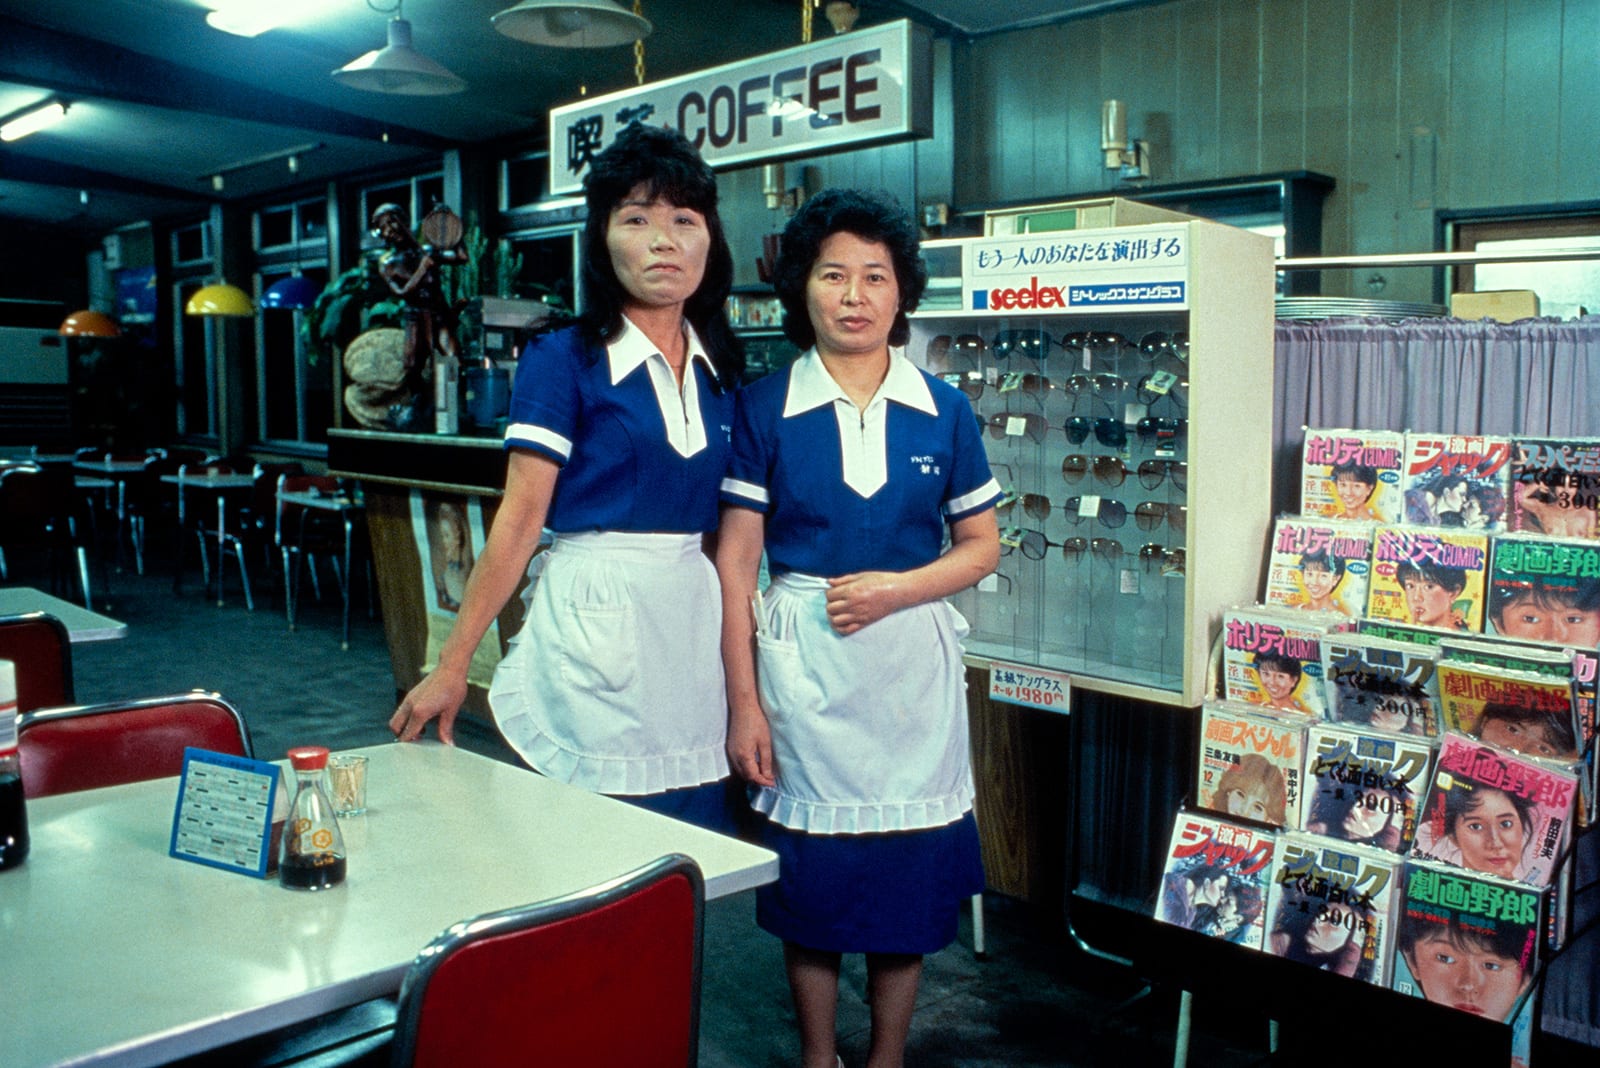 In Japan zeigen diese alten Fotos eine verborgene Seite, die nach Feierabend begann